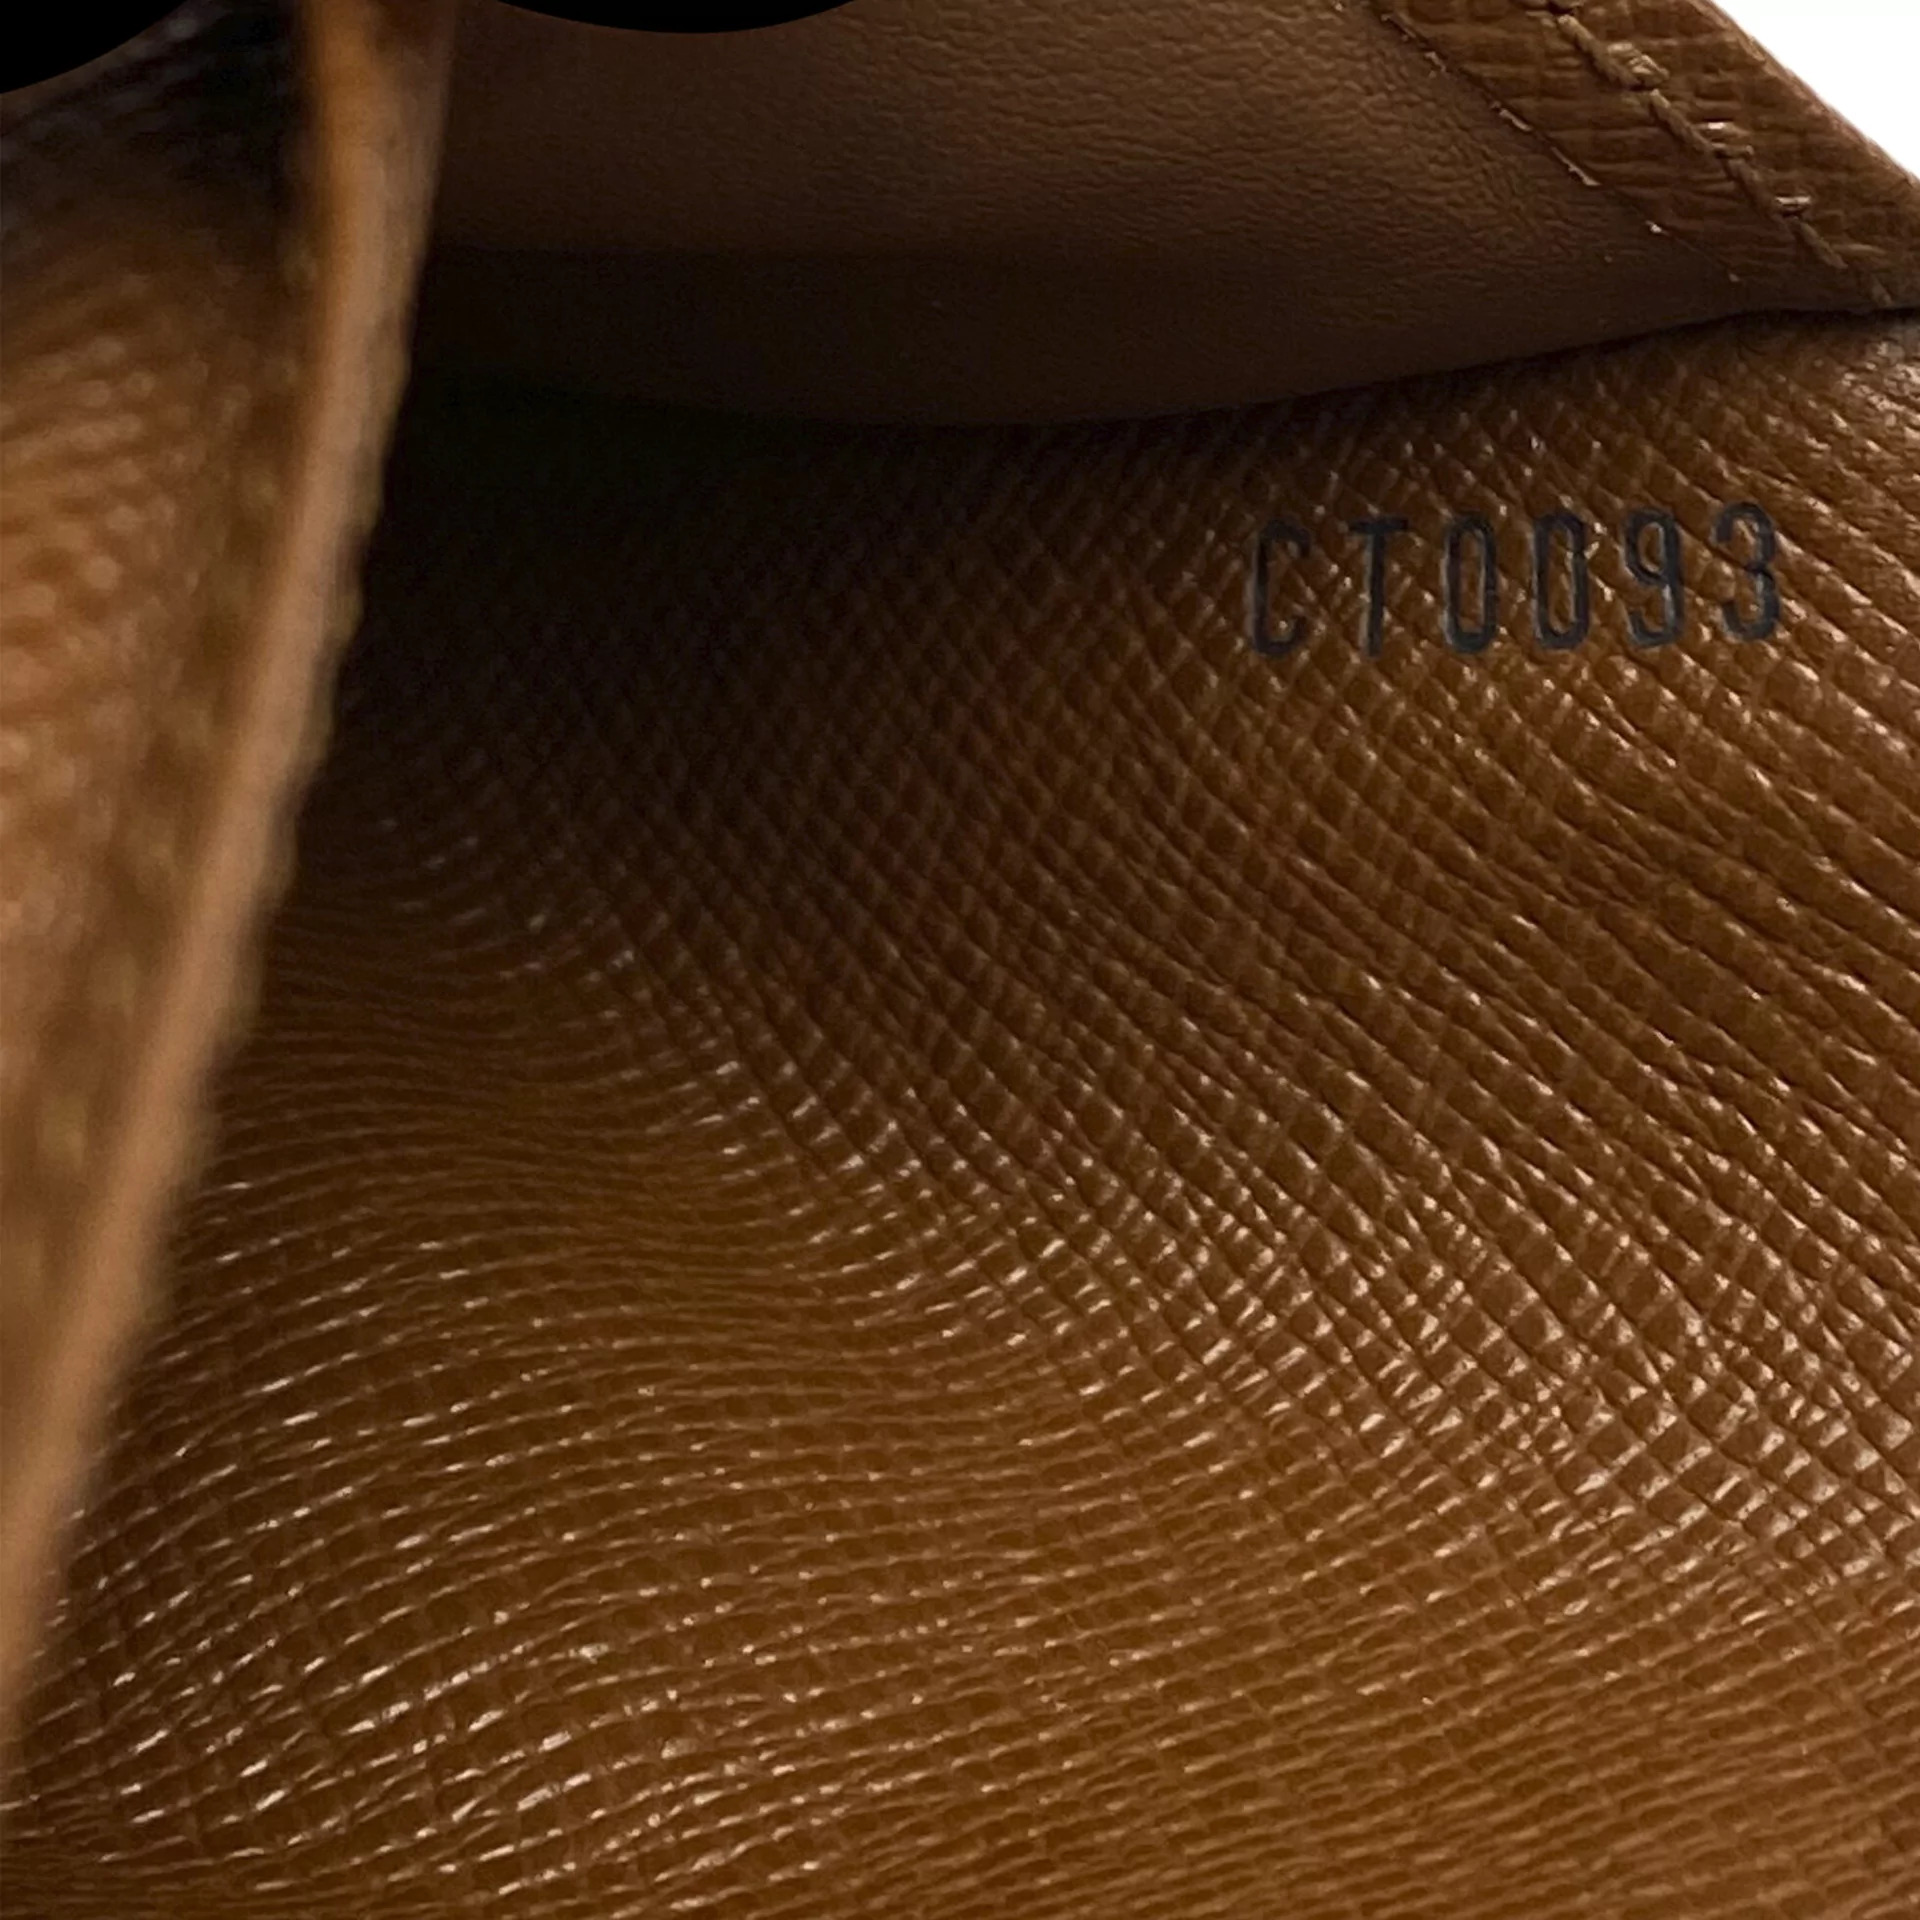 Carteira Louis Vuitton Monogram